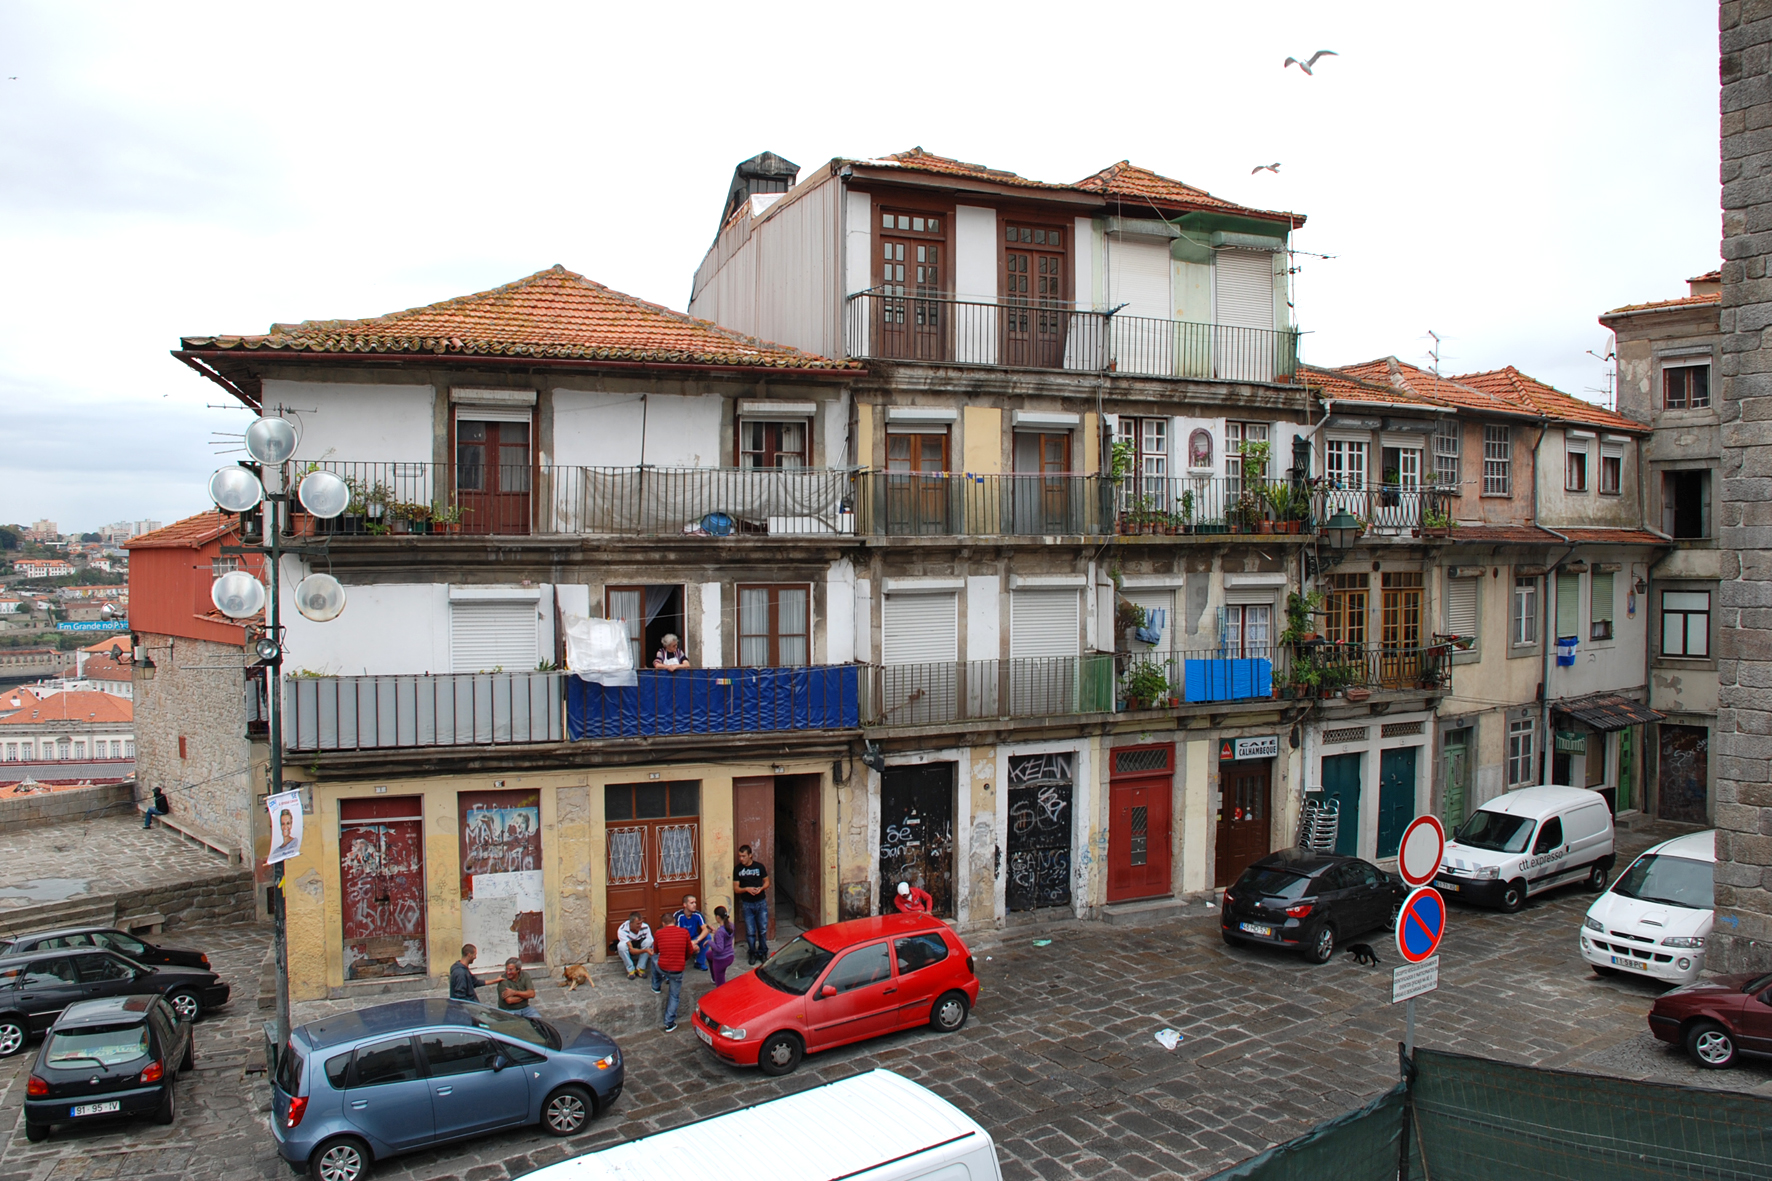 Фотография №63 - город Порту в Португалии